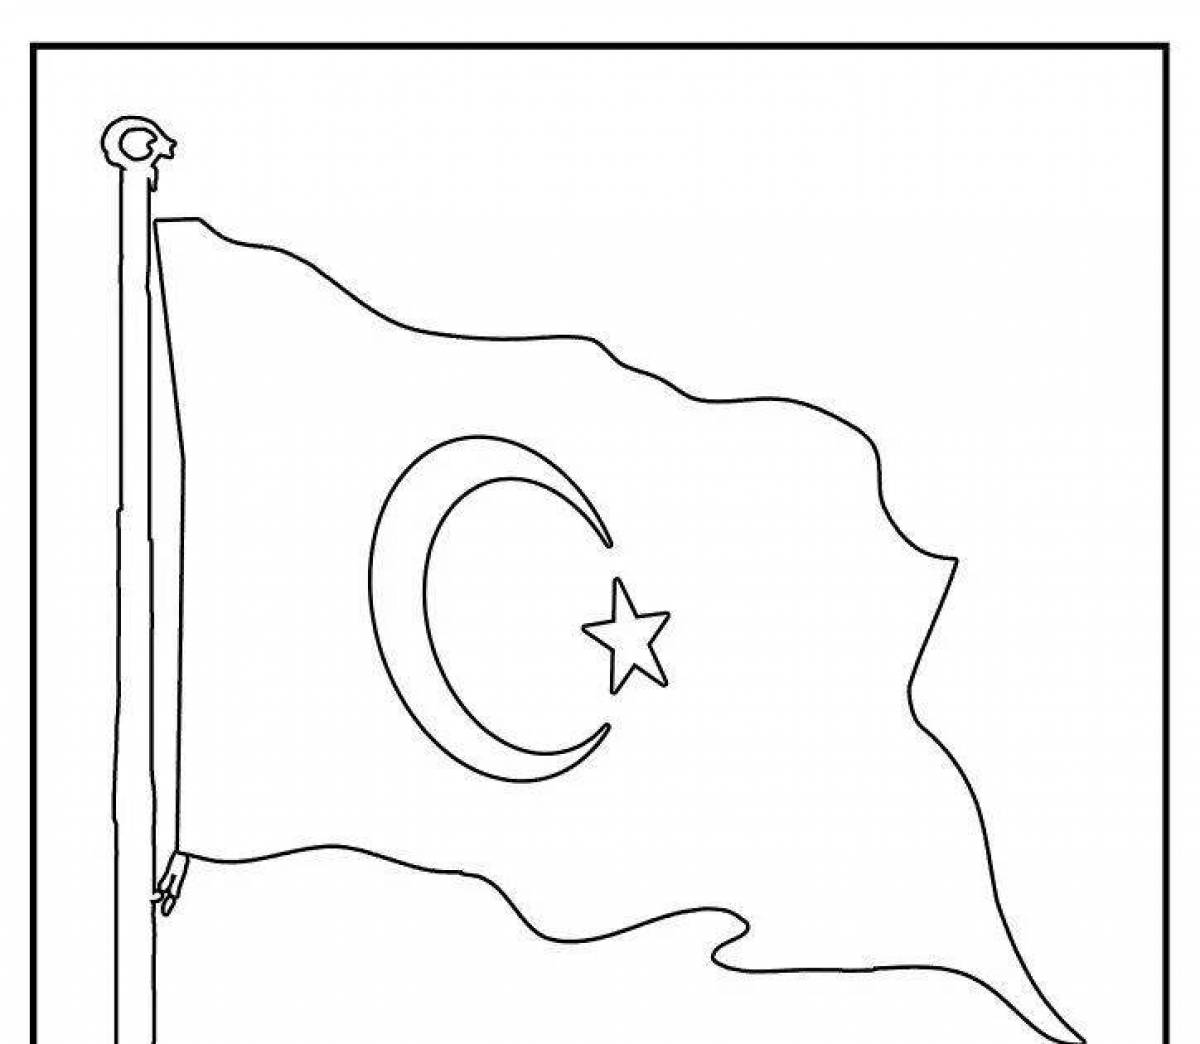 Юмористическая страница раскраски флага турции